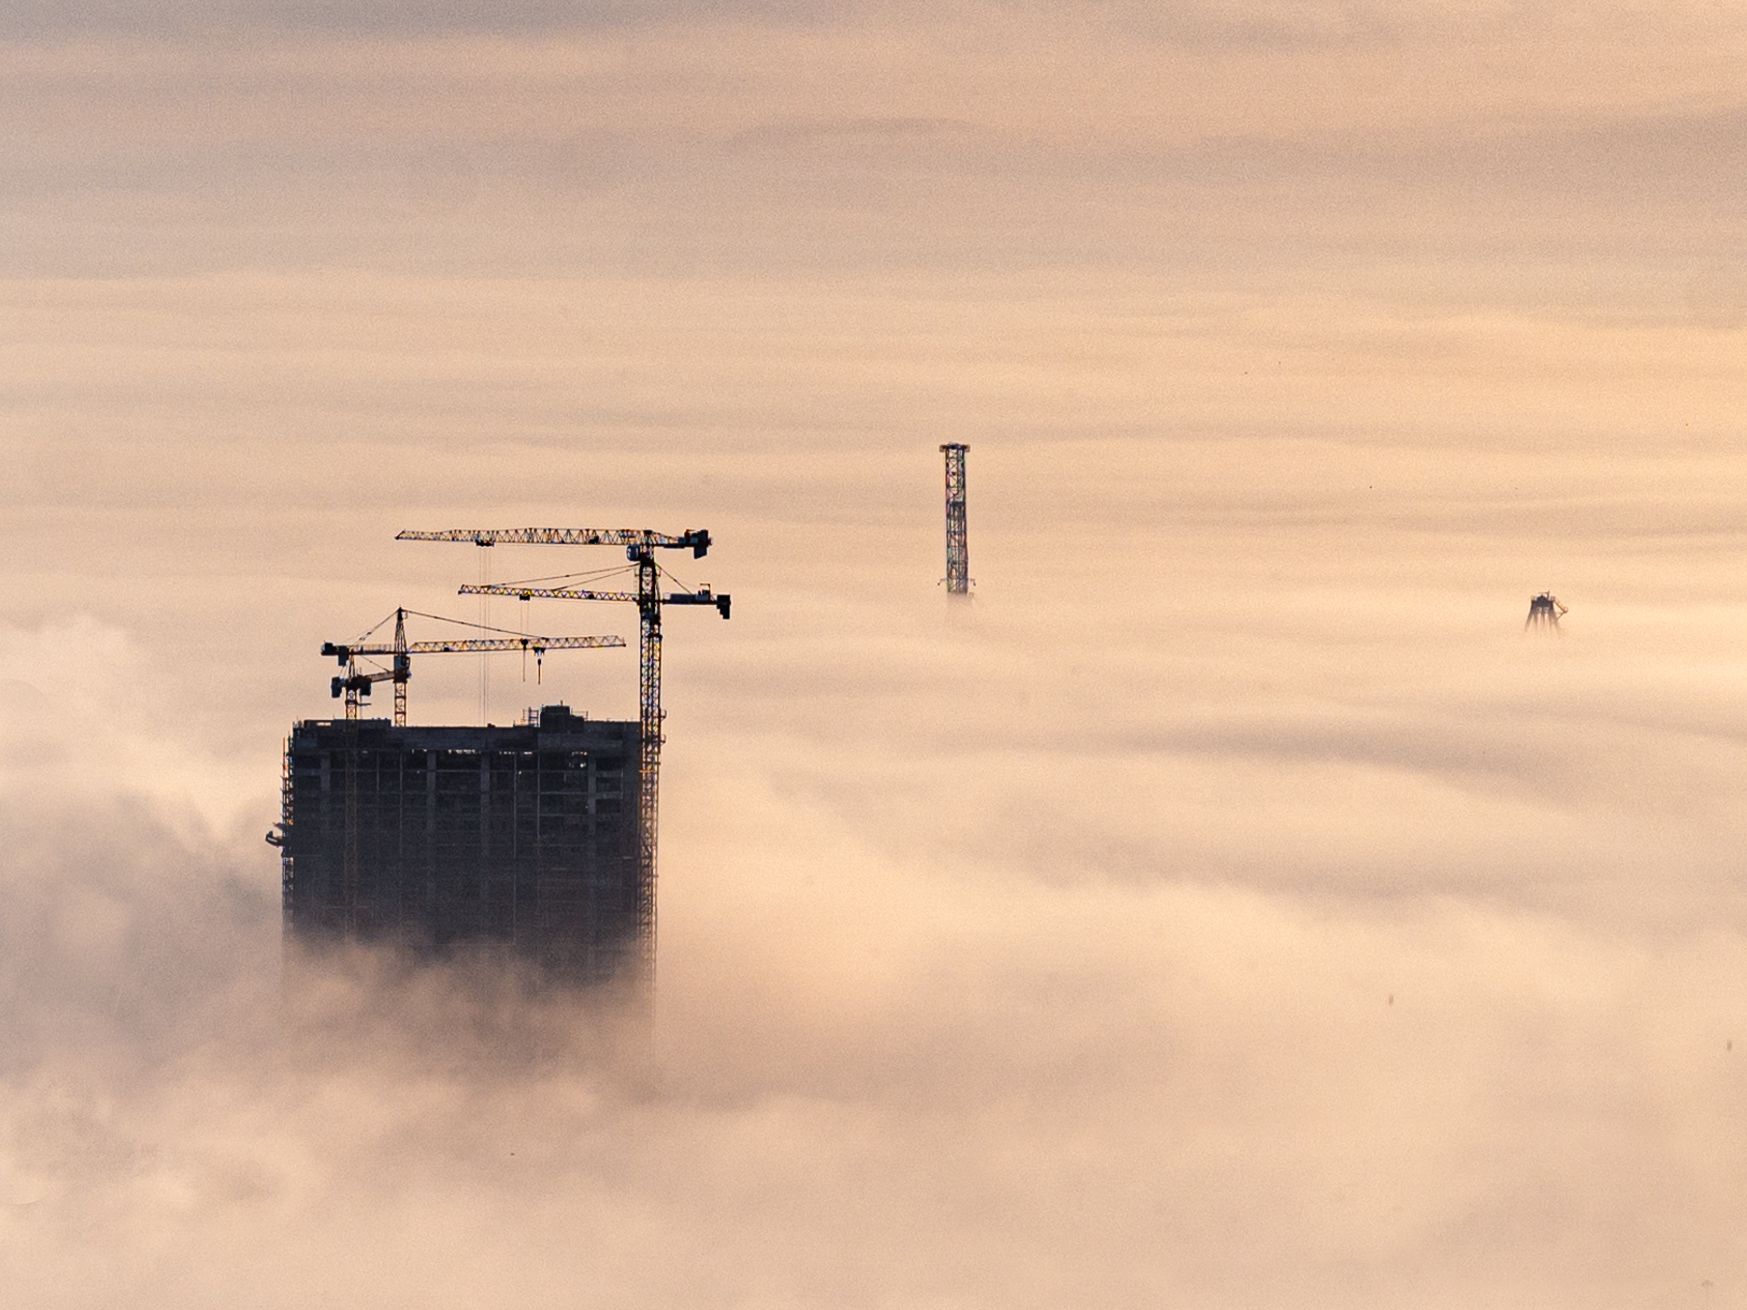 Building The Cloud City